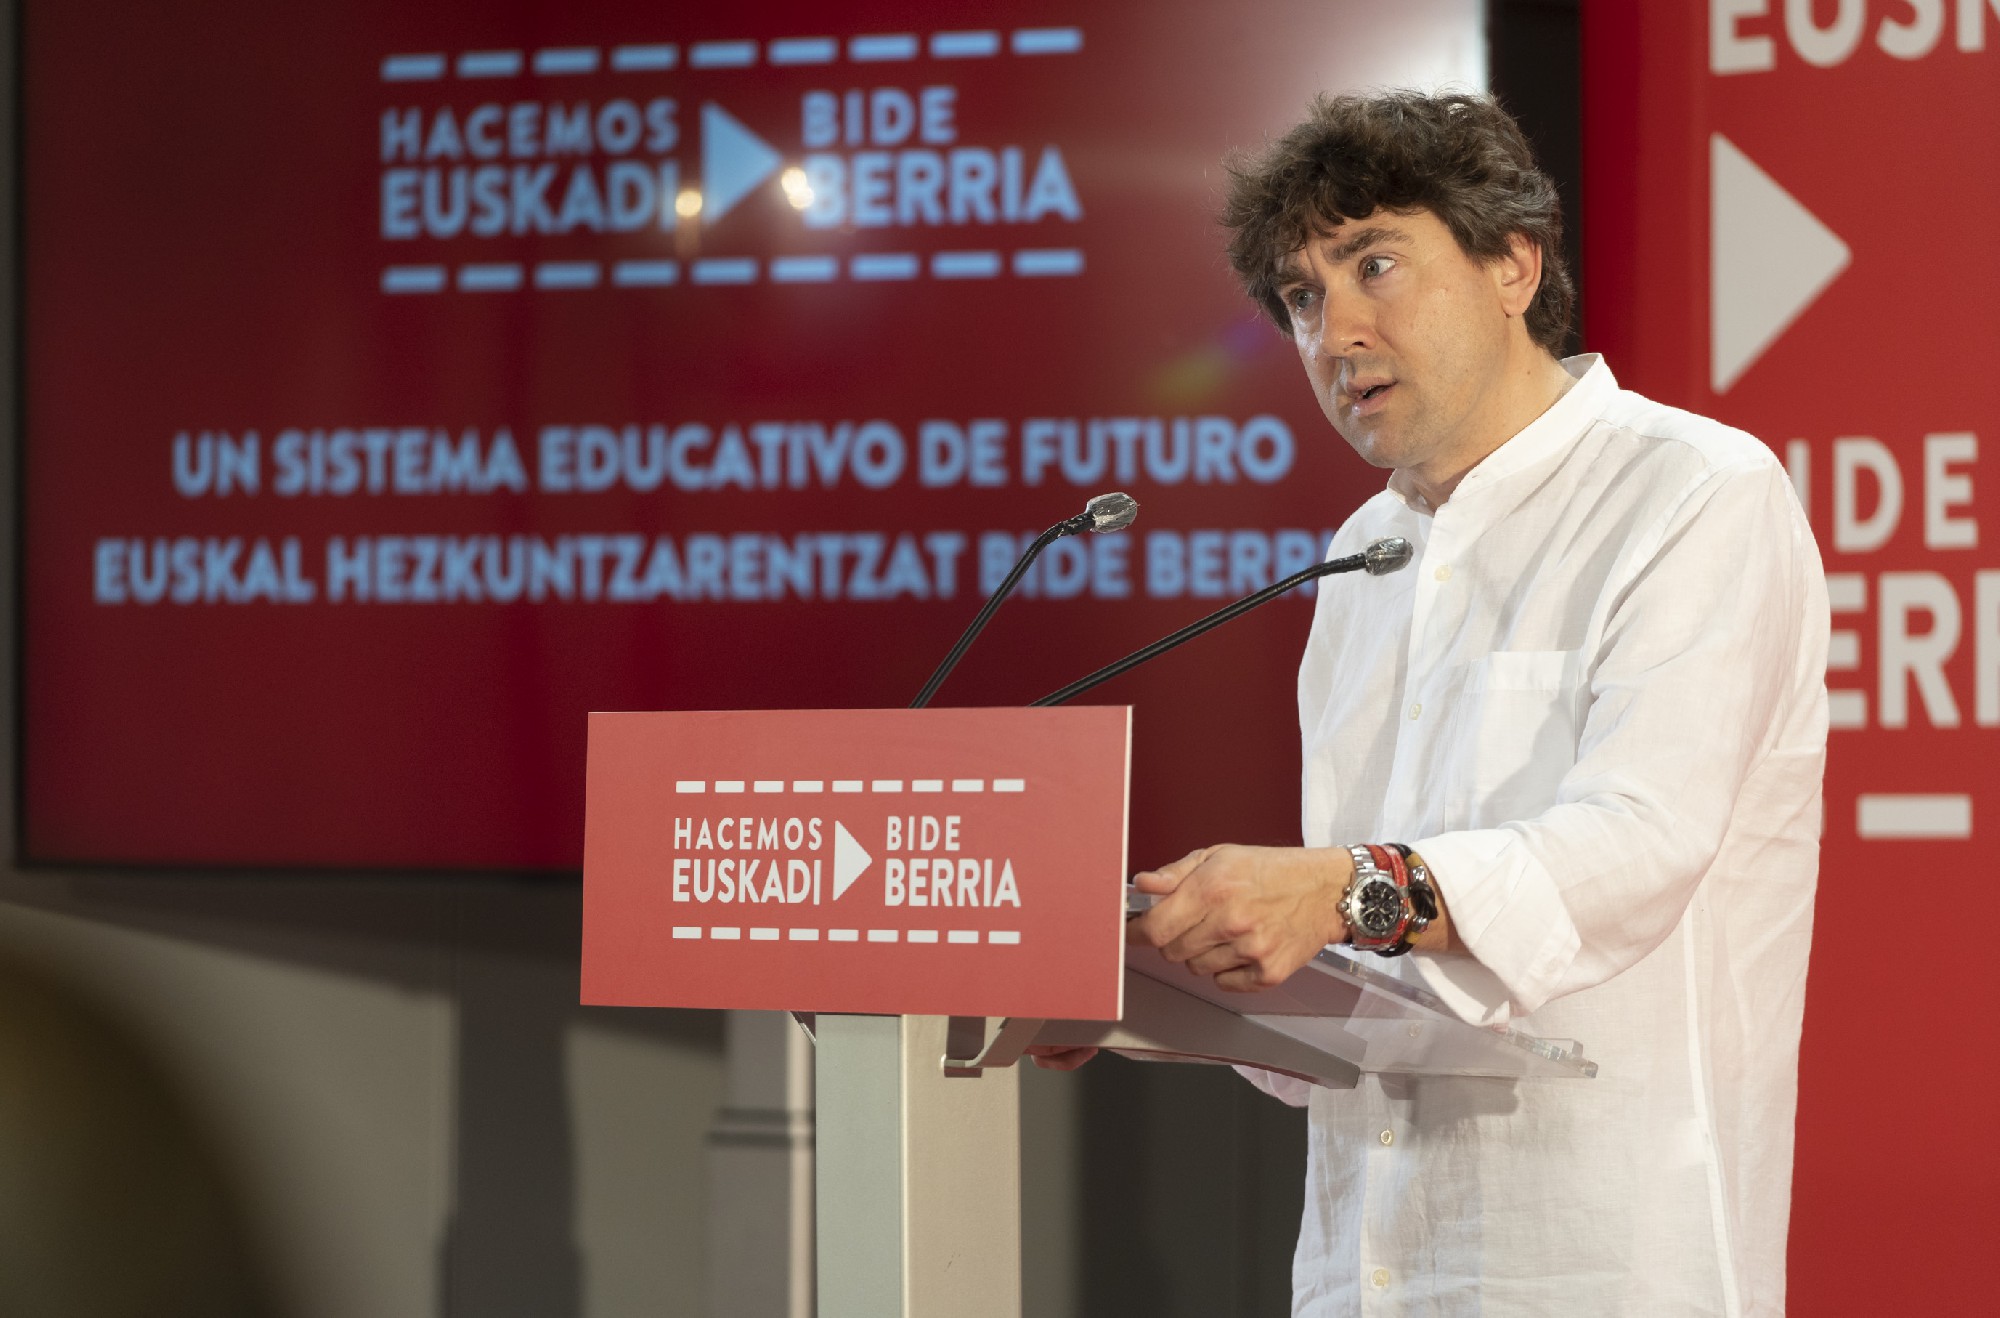 El Secretario General del PSE-EE, Eneko Andueza, interviene en la apertura de la jornada sobre el sistema educativo vasco | Foto: Socialistas Vascos